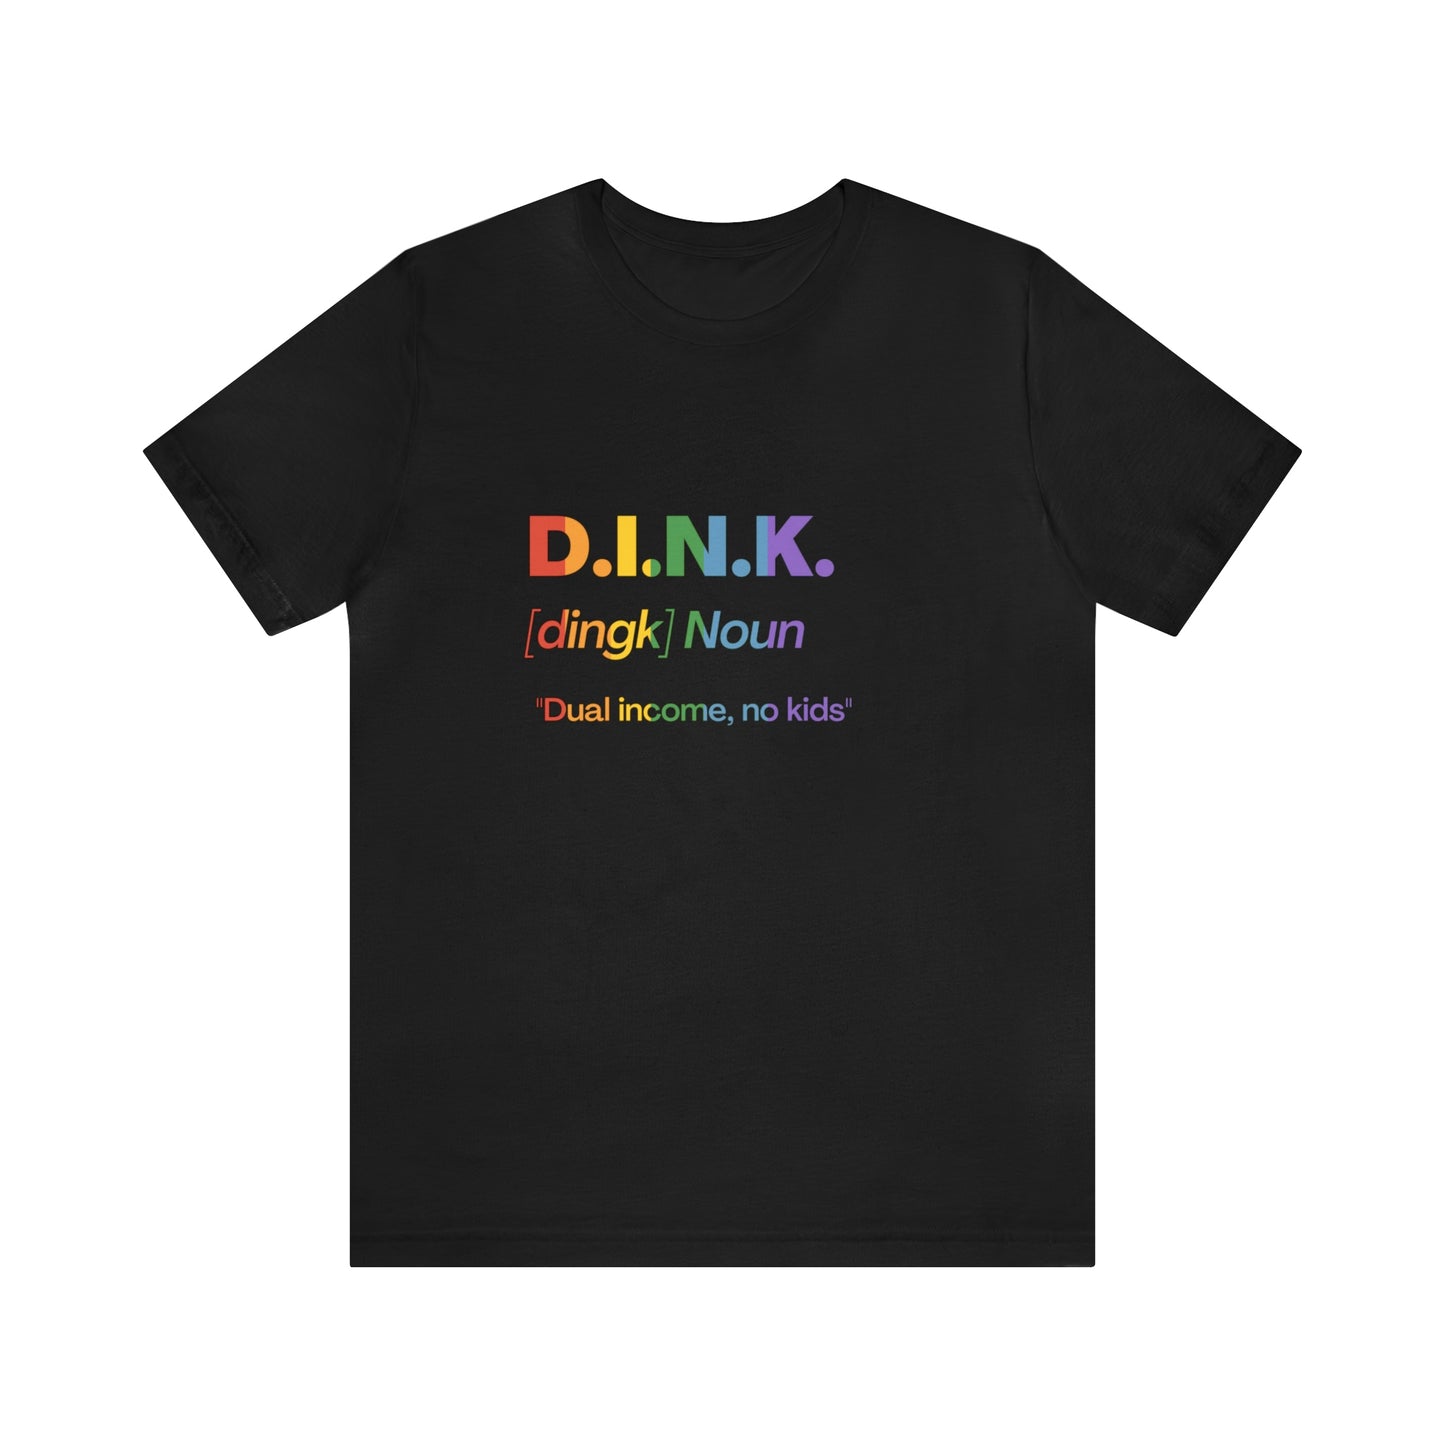 D.I.N.K. Definition Rainbow Tee